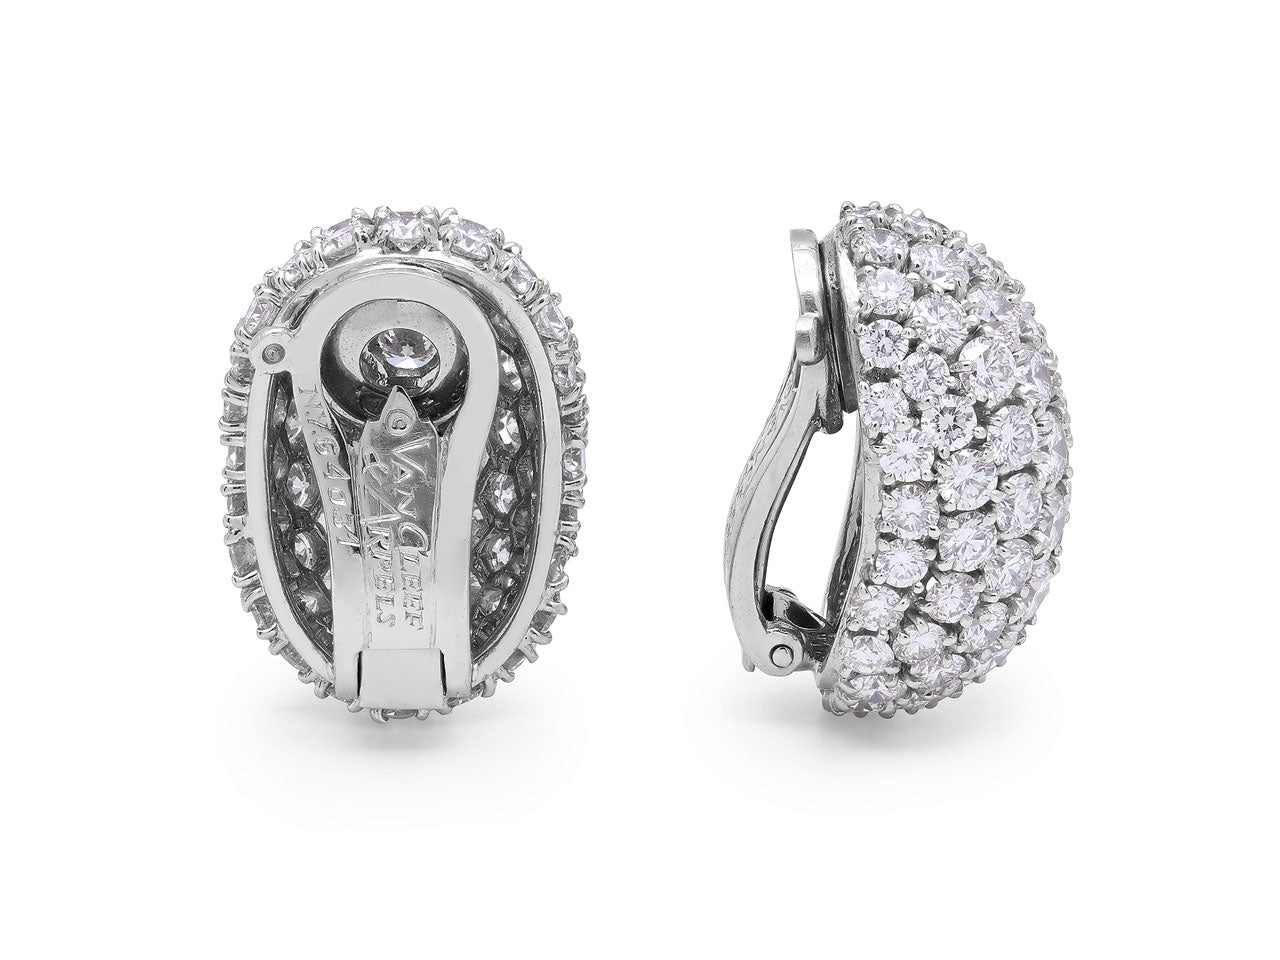 Van Cleef & Arpels Diamond Bombé Earrings in Platinum